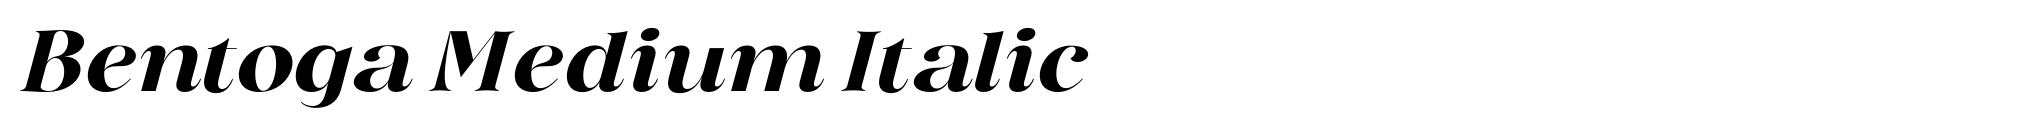 Bentoga Medium Italic image